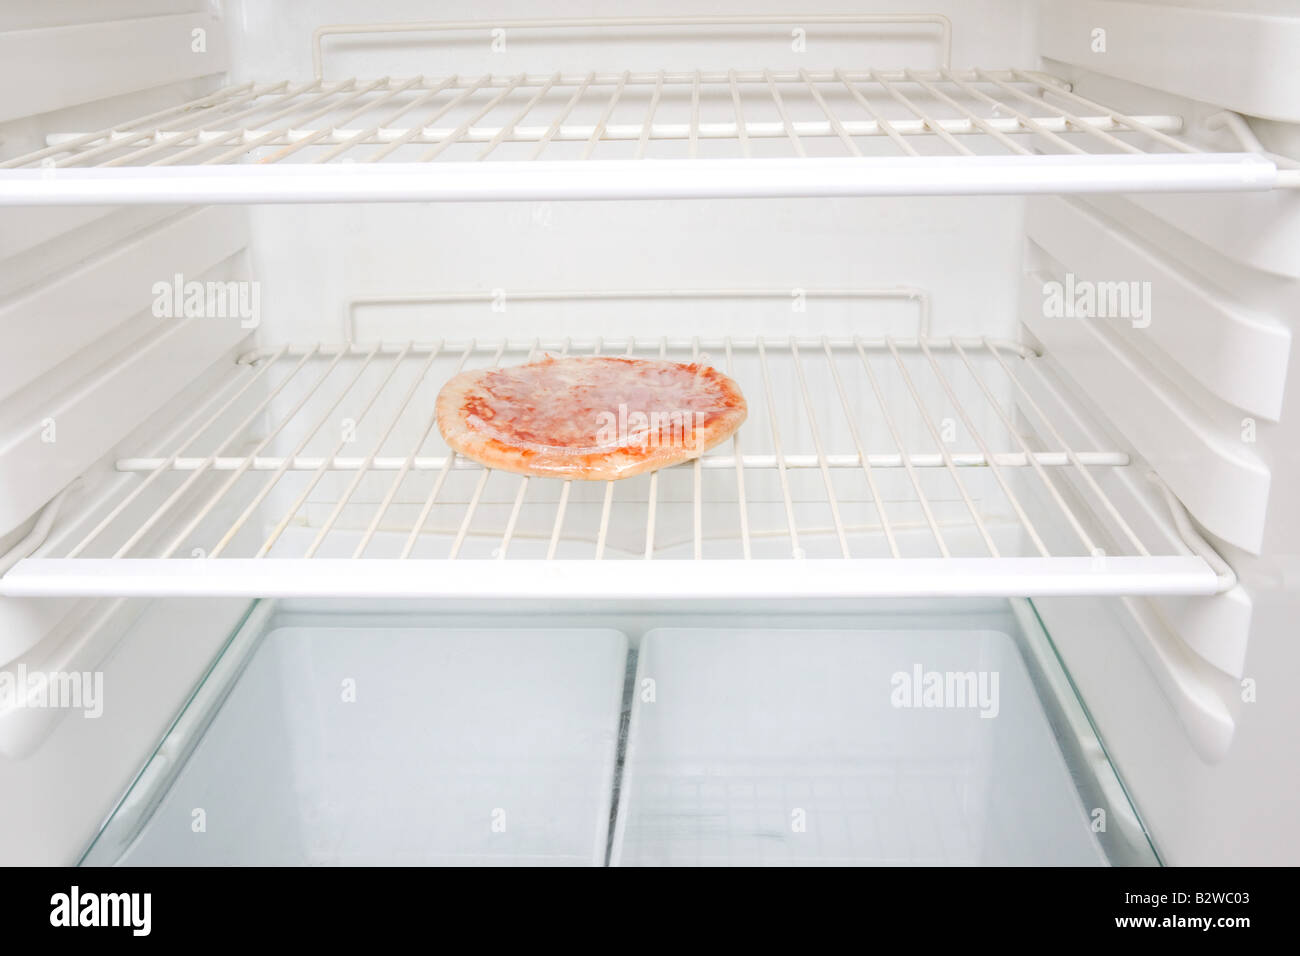 Eine Pizza im Kühlschrank Stockfotografie - Alamy